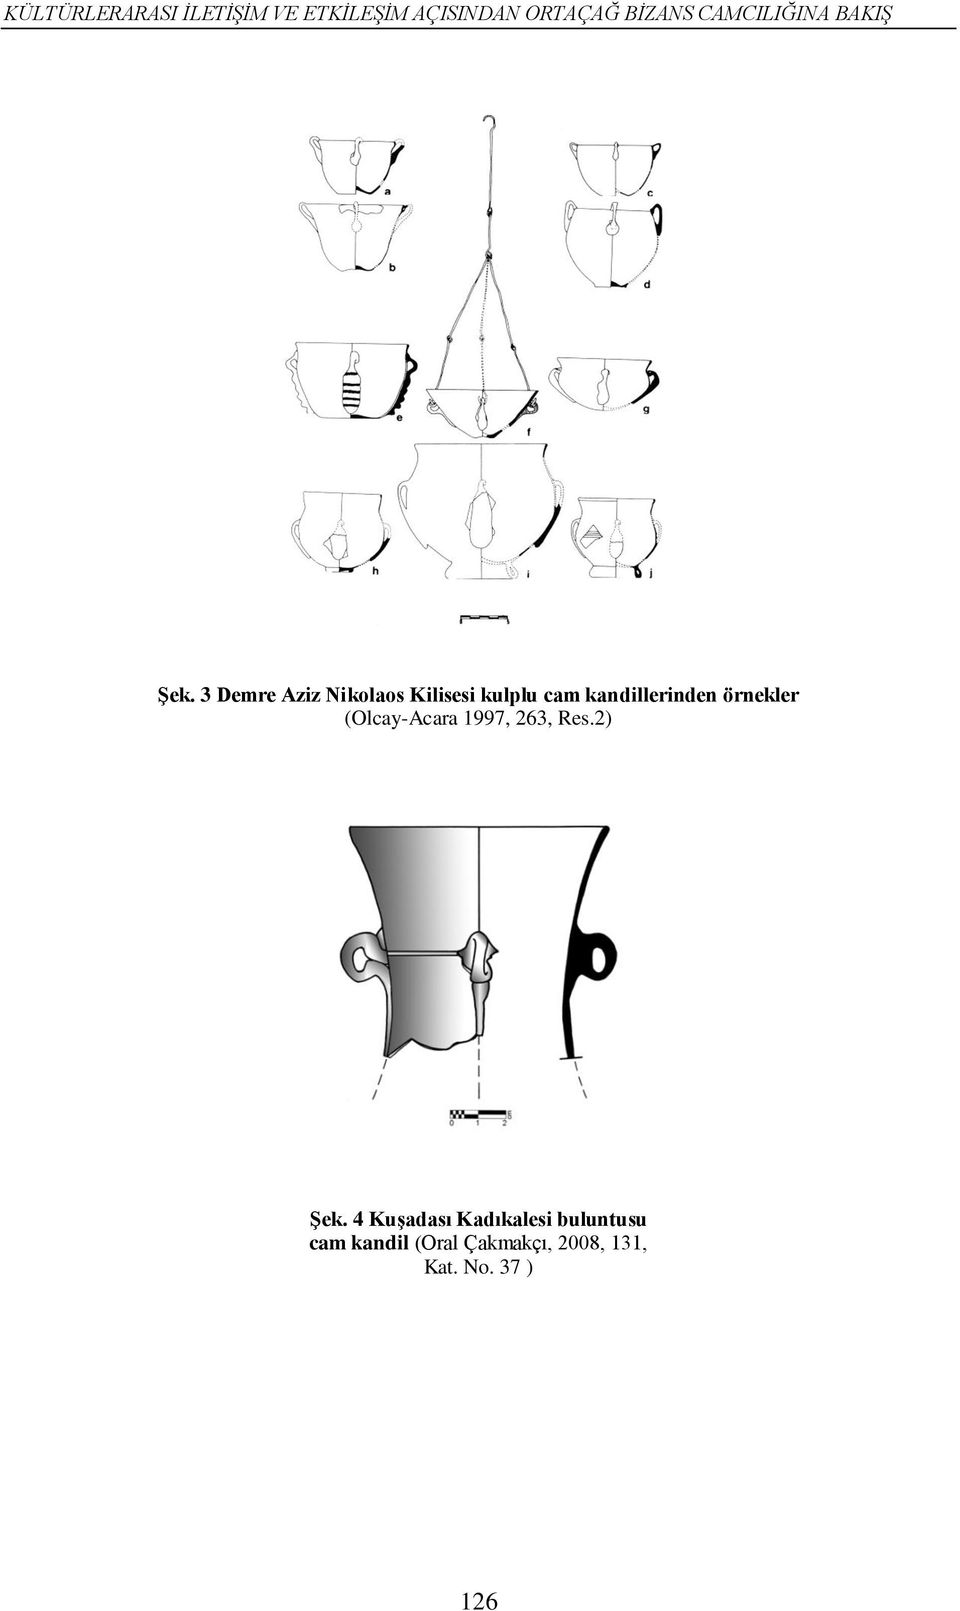 3 Demre Aziz Nikolaos Kilisesi kulplu cam kandillerinden örnekler